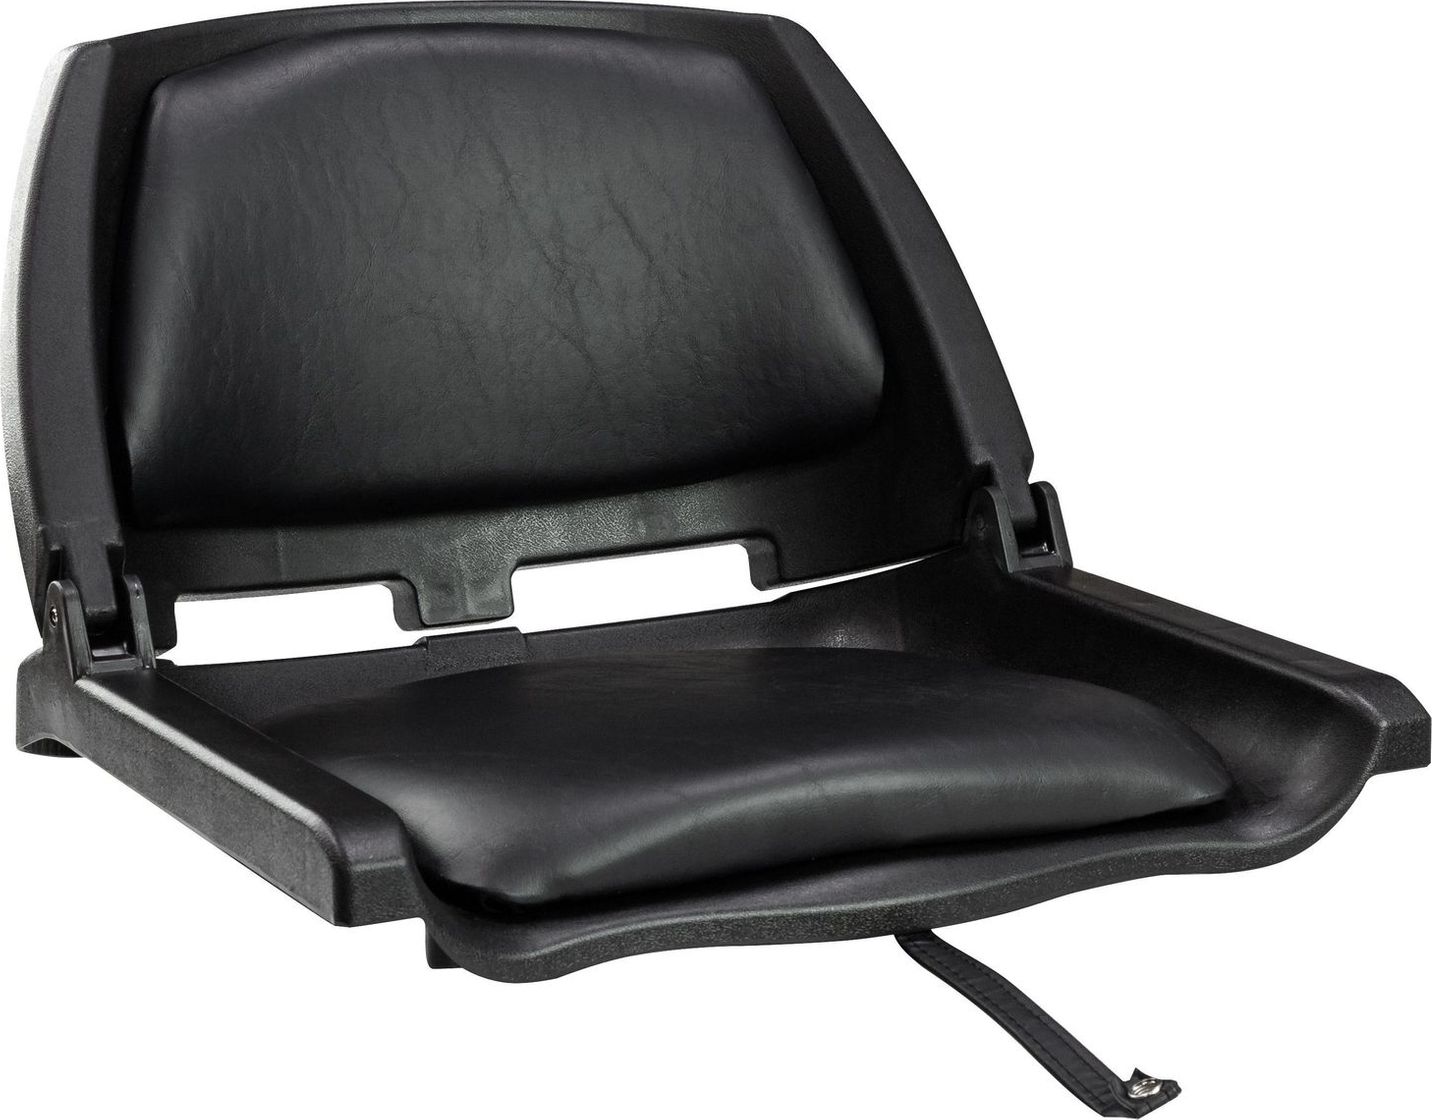 Кресло складное мягкое TRAVELER, цвет черный/черный (упаковка из 2 шт.) 1061103C_pkg_2